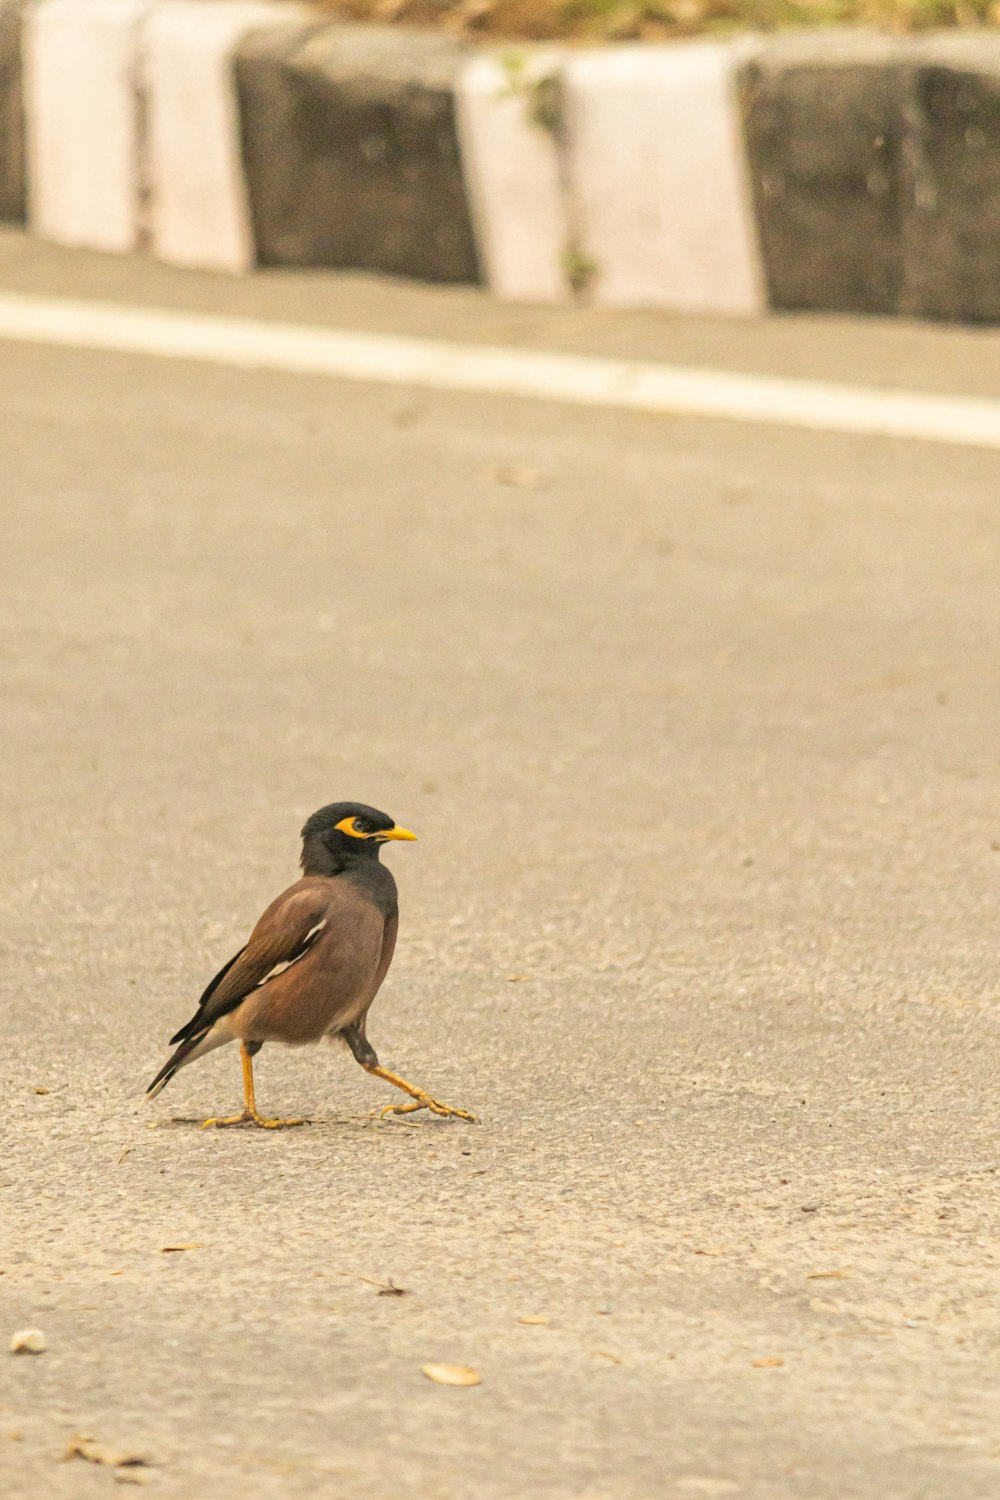 Un pequeño pájaro parado al costado de una carretera